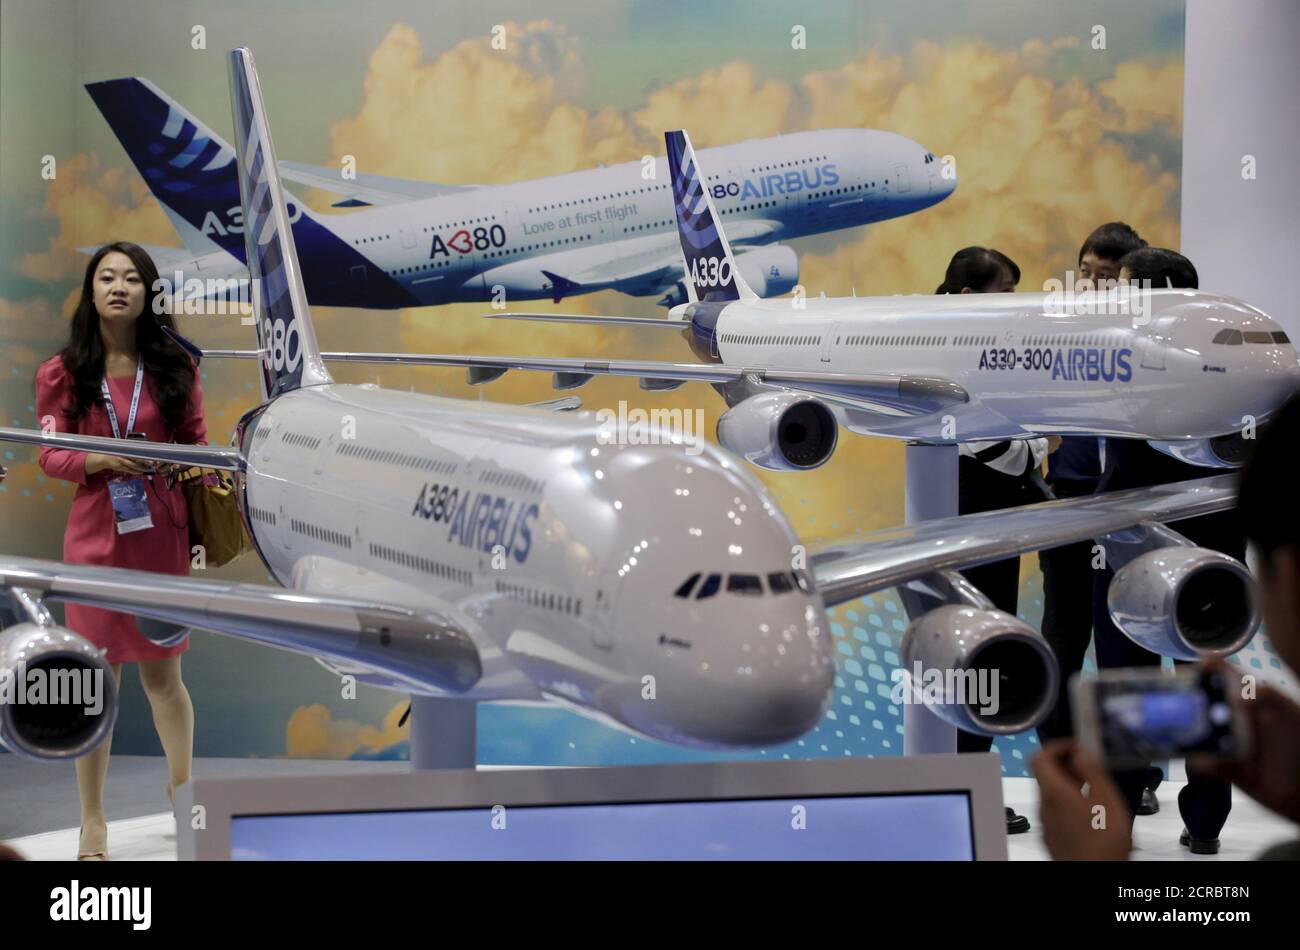 Un visitante se encuentra junto a los modelos de Airbus A380 y A330 en la Aviation Expo China 2015, en Beijing, China, 16 de septiembre de 2015. La exposición de cuatro días de duración de la Aviación China 2015 comenzó el miércoles. Según los medios de comunicación locales, la expo está organizada conjuntamente por la Aviation Industry Corporation of China (AVIC), Commercial Aircraft Corporation of China Ltd. (COMAC) y otros, se invitó a unos 150 expositores de 16 países. REUTERS/Jason Lee Foto de stock